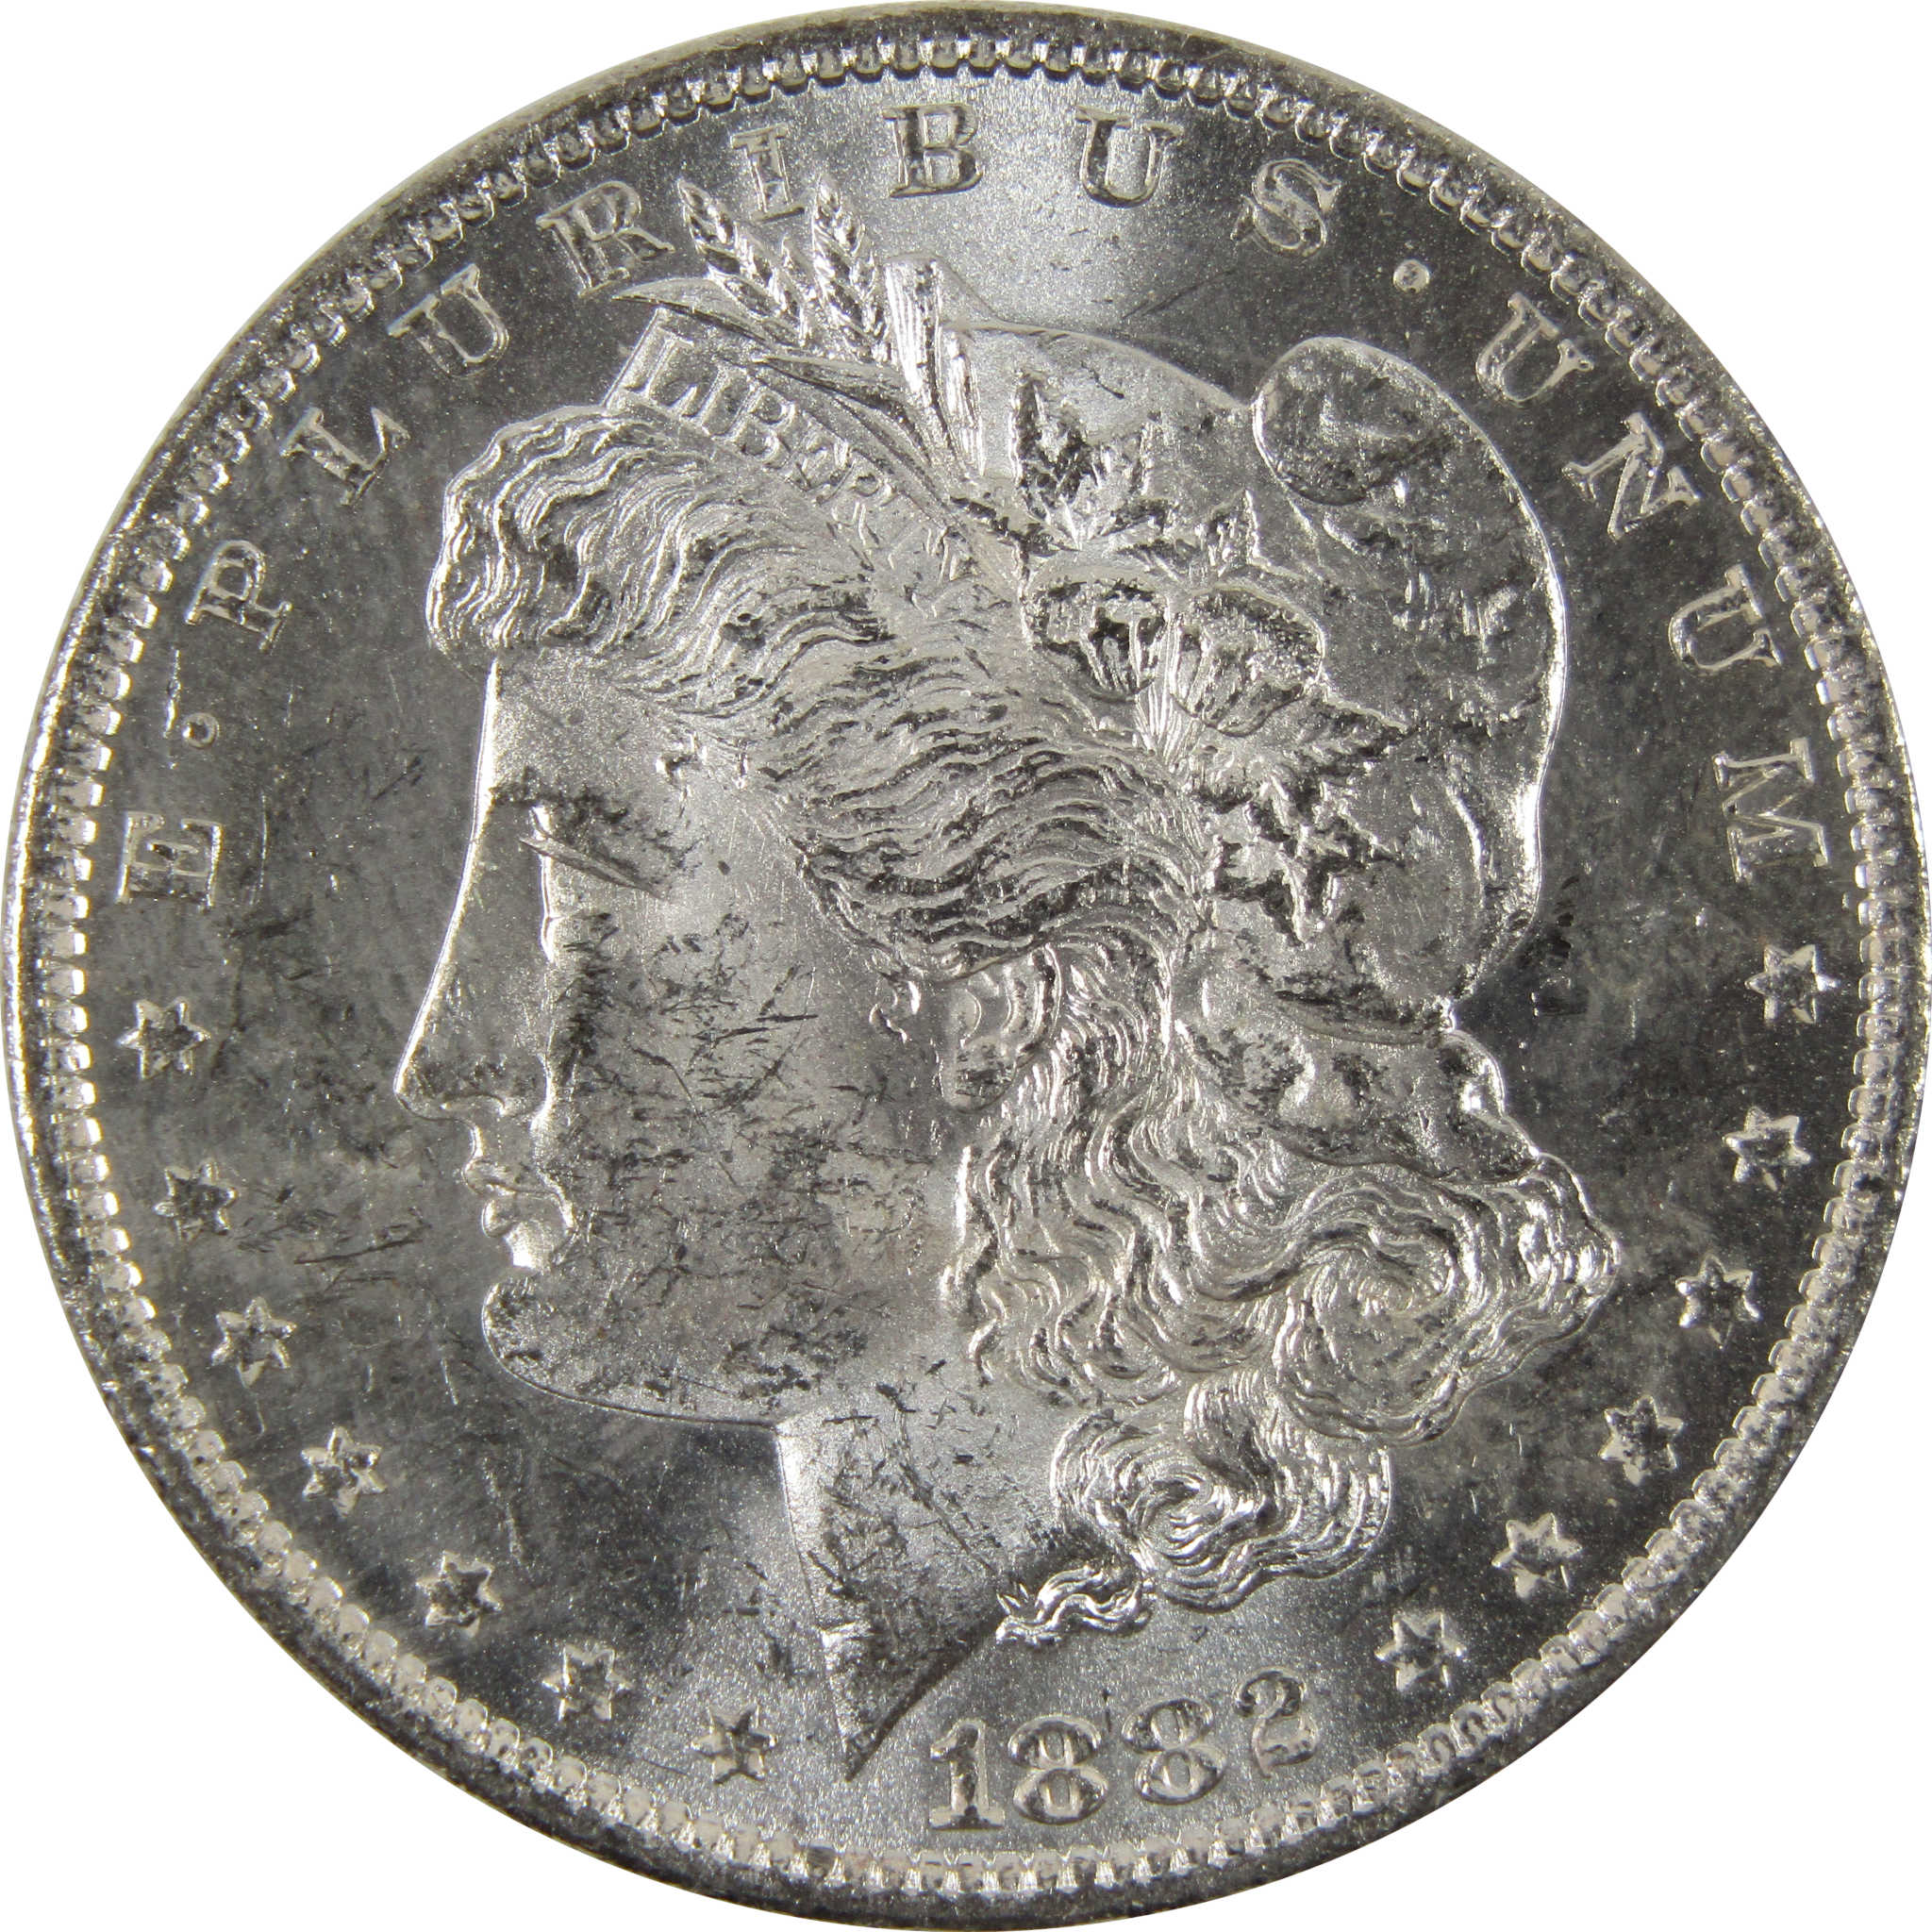 1882 O Morgan Dollar BU Uncirculated 90% Silver $1 Coin SKU:I8821 - Morgan coin - Morgan silver dollar - Morgan silver dollar for sale - Profile Coins &amp; Collectibles